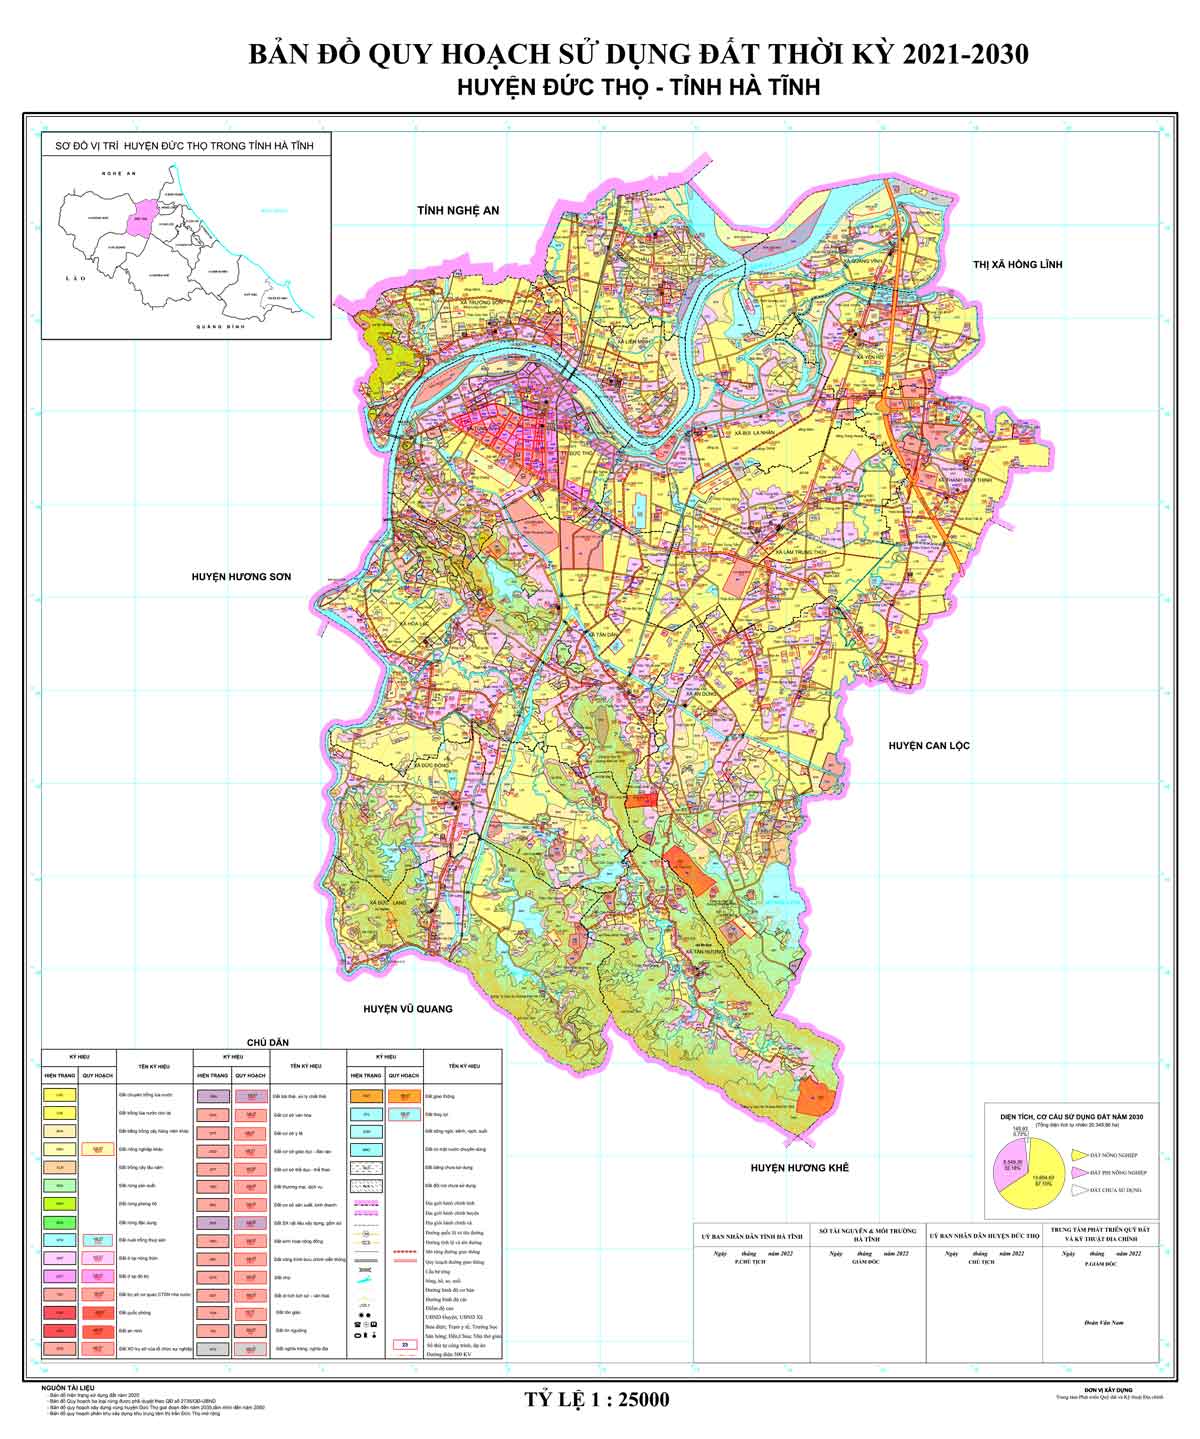 Bản đồ QHSDĐ huyện Đức Thọ đến năm 2030